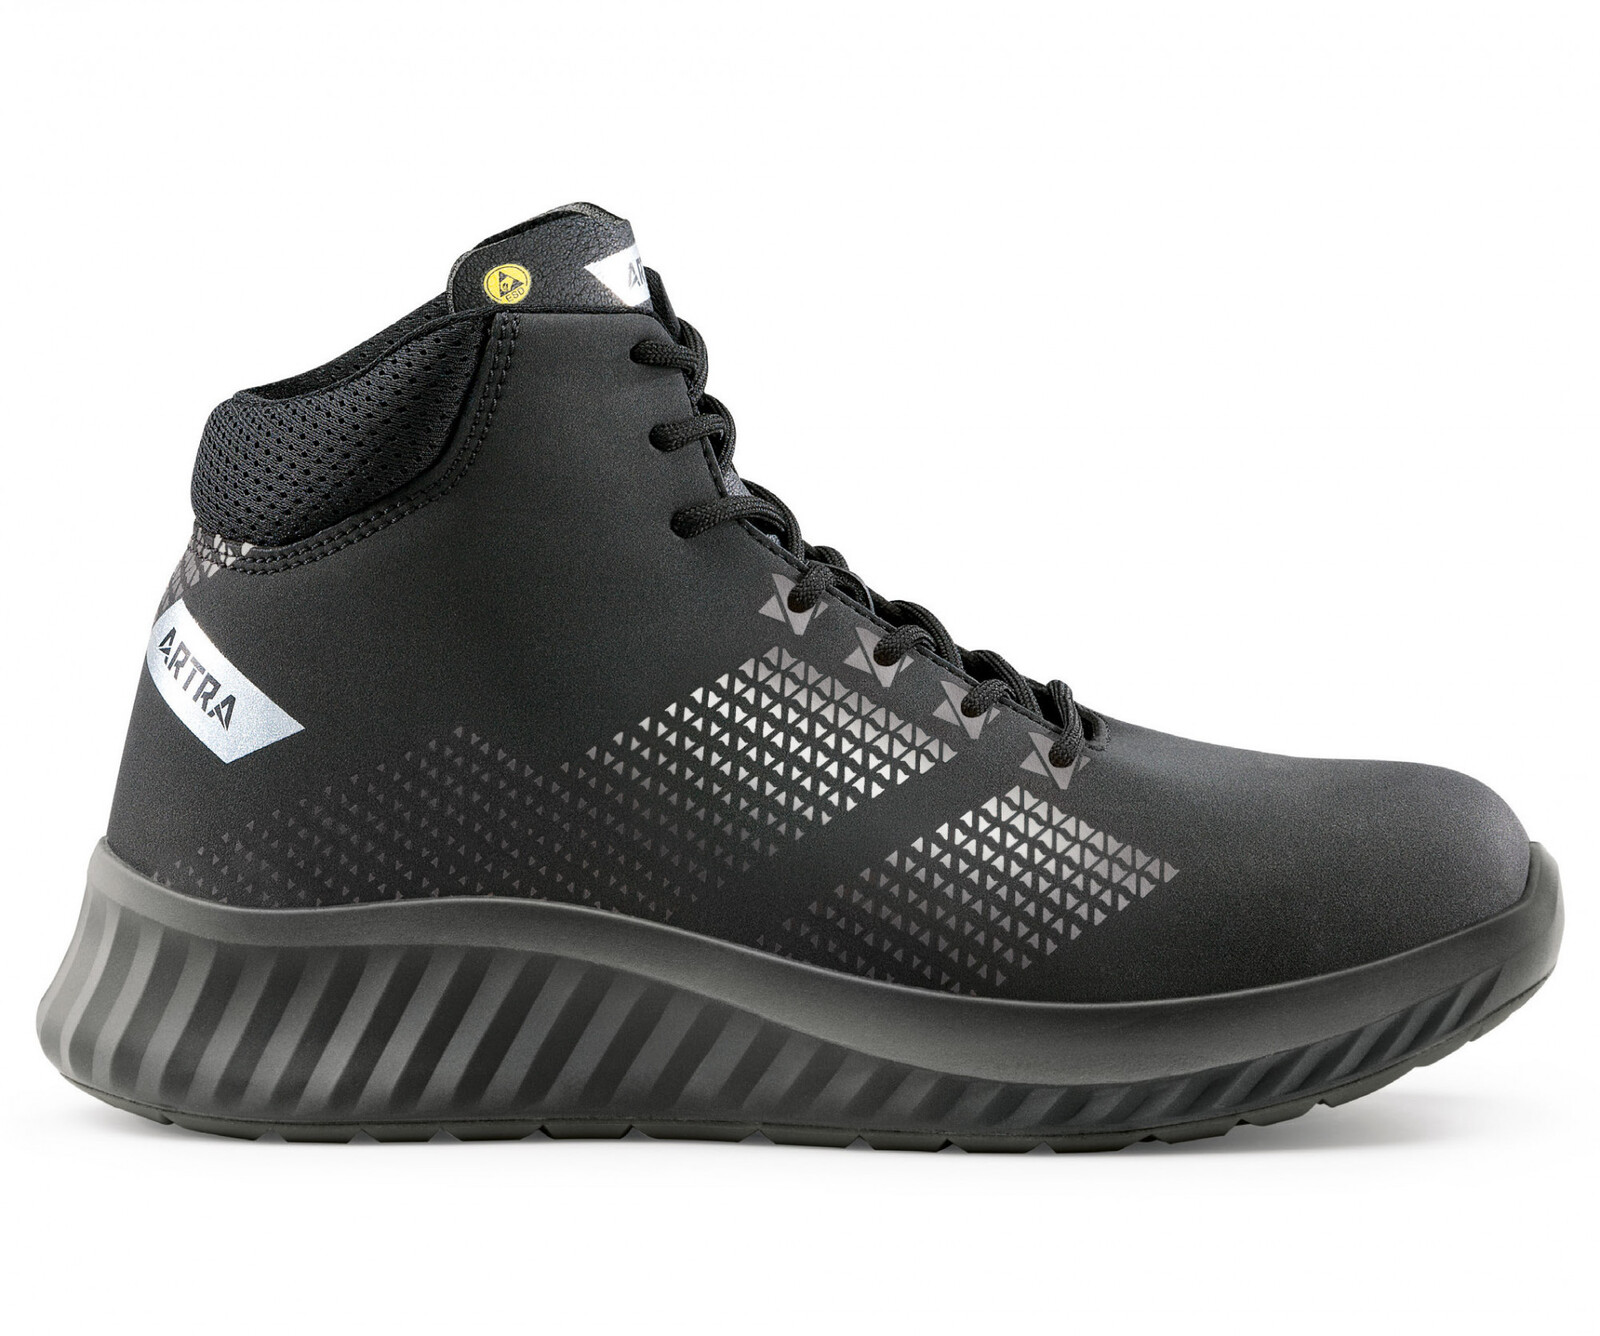 Bezpečnostná členková obuv Artra Aroserio 750 616560 S3 SRC ESD - veľkosť: 42, farba: čierna/sivá